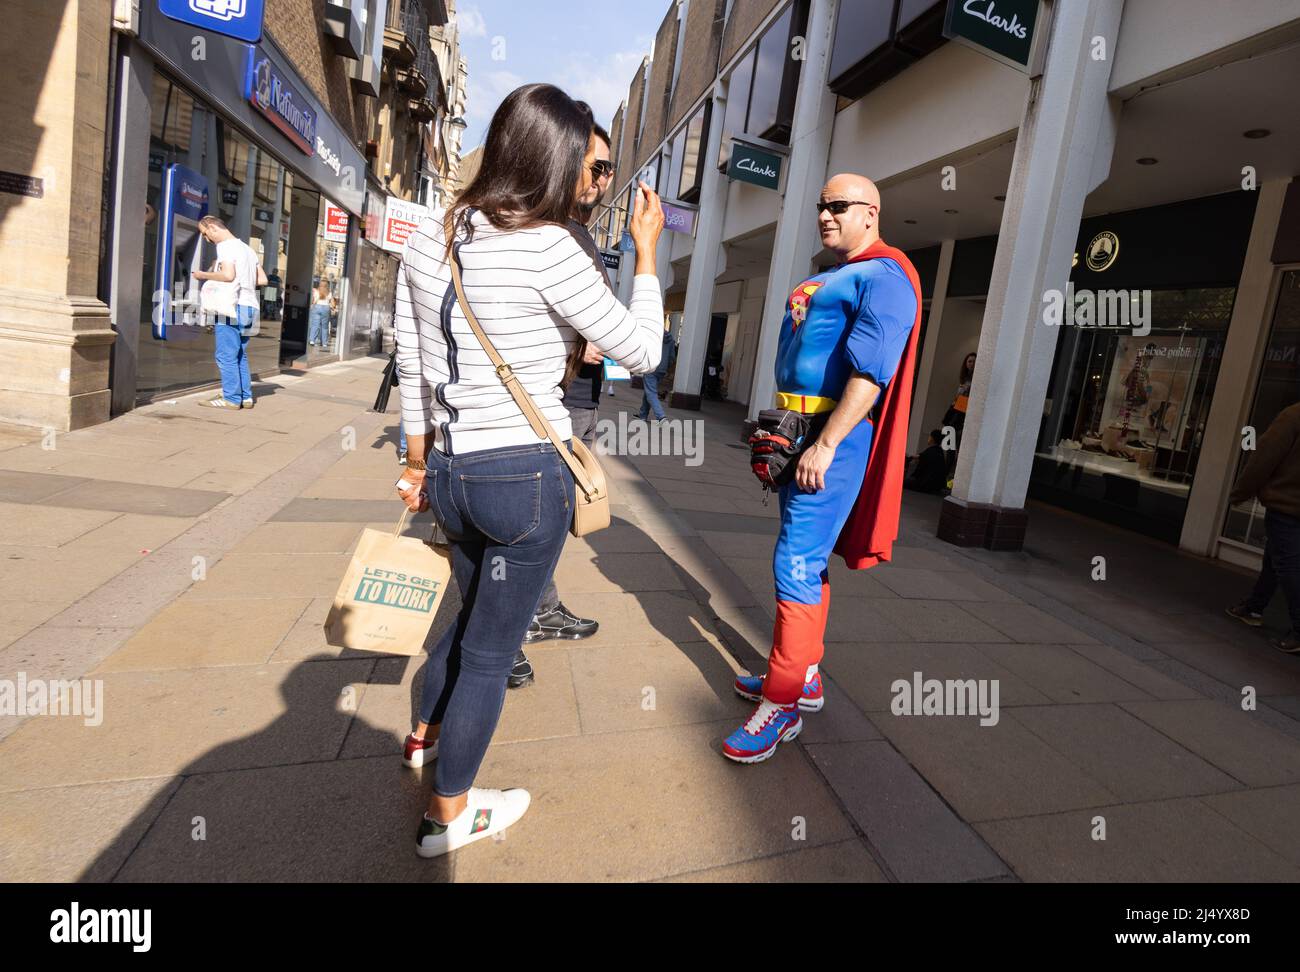 Mann im Superman-Kostüm im Gespräch mit Menschen, Cambridge, Großbritannien; ehrliche Straßenfotografie, Großbritannien. Exzentrisches englisch. Stockfoto